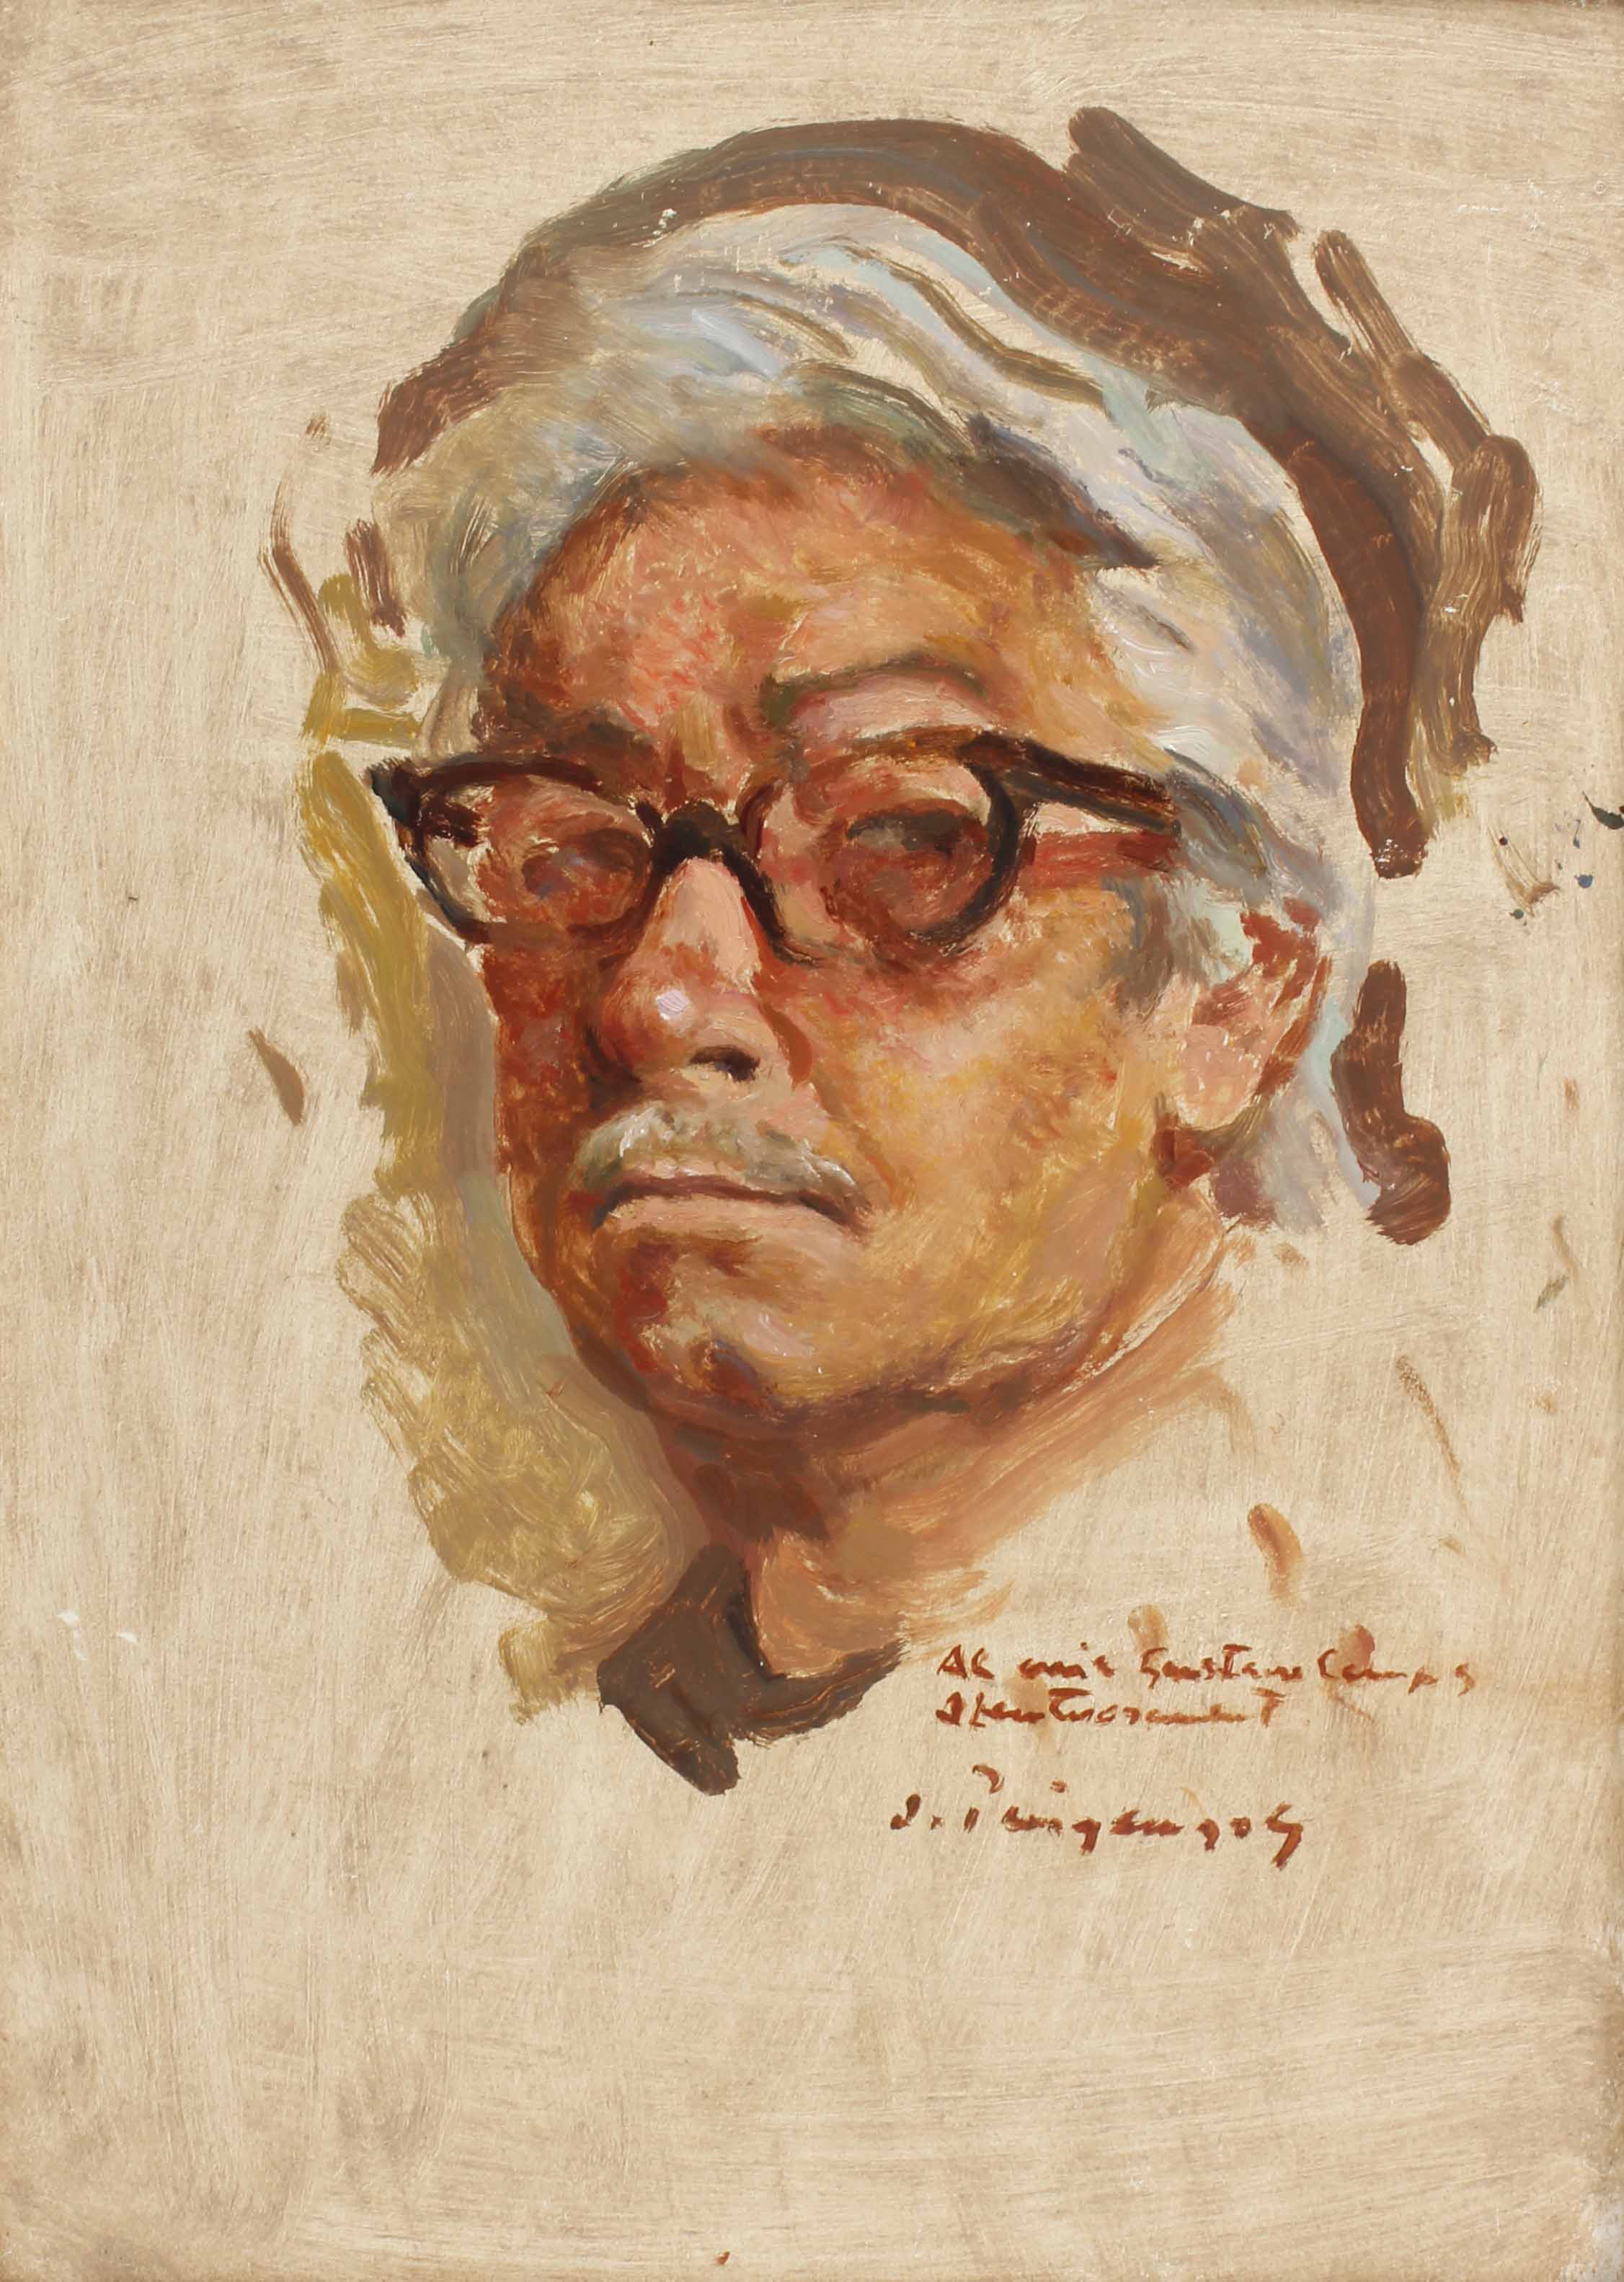 JOSEP PUIGDENGOLAS BARELLA (1906-1987). "AUTORRETRATO", 197